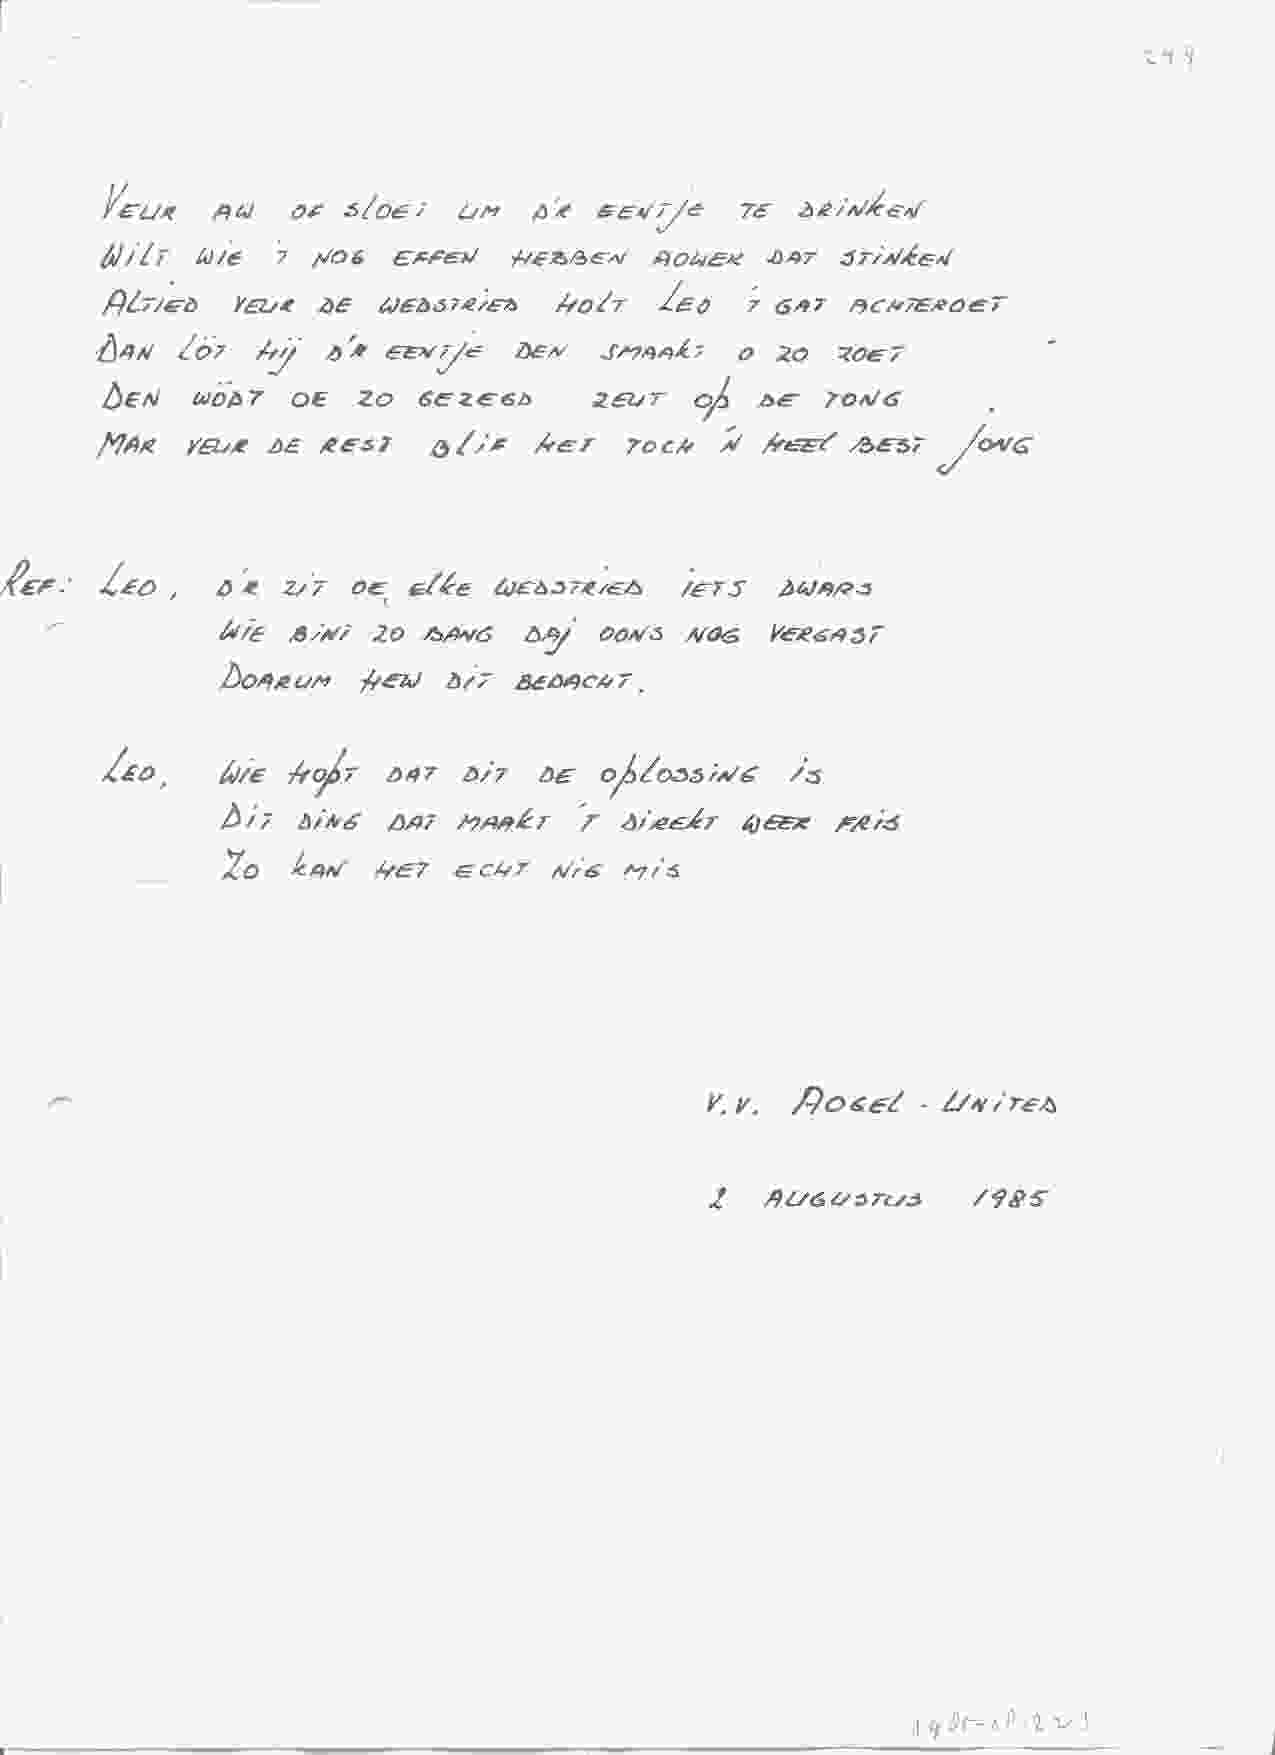 Songtekst bij bruiloft van Leo en Joke op 1985-08-02